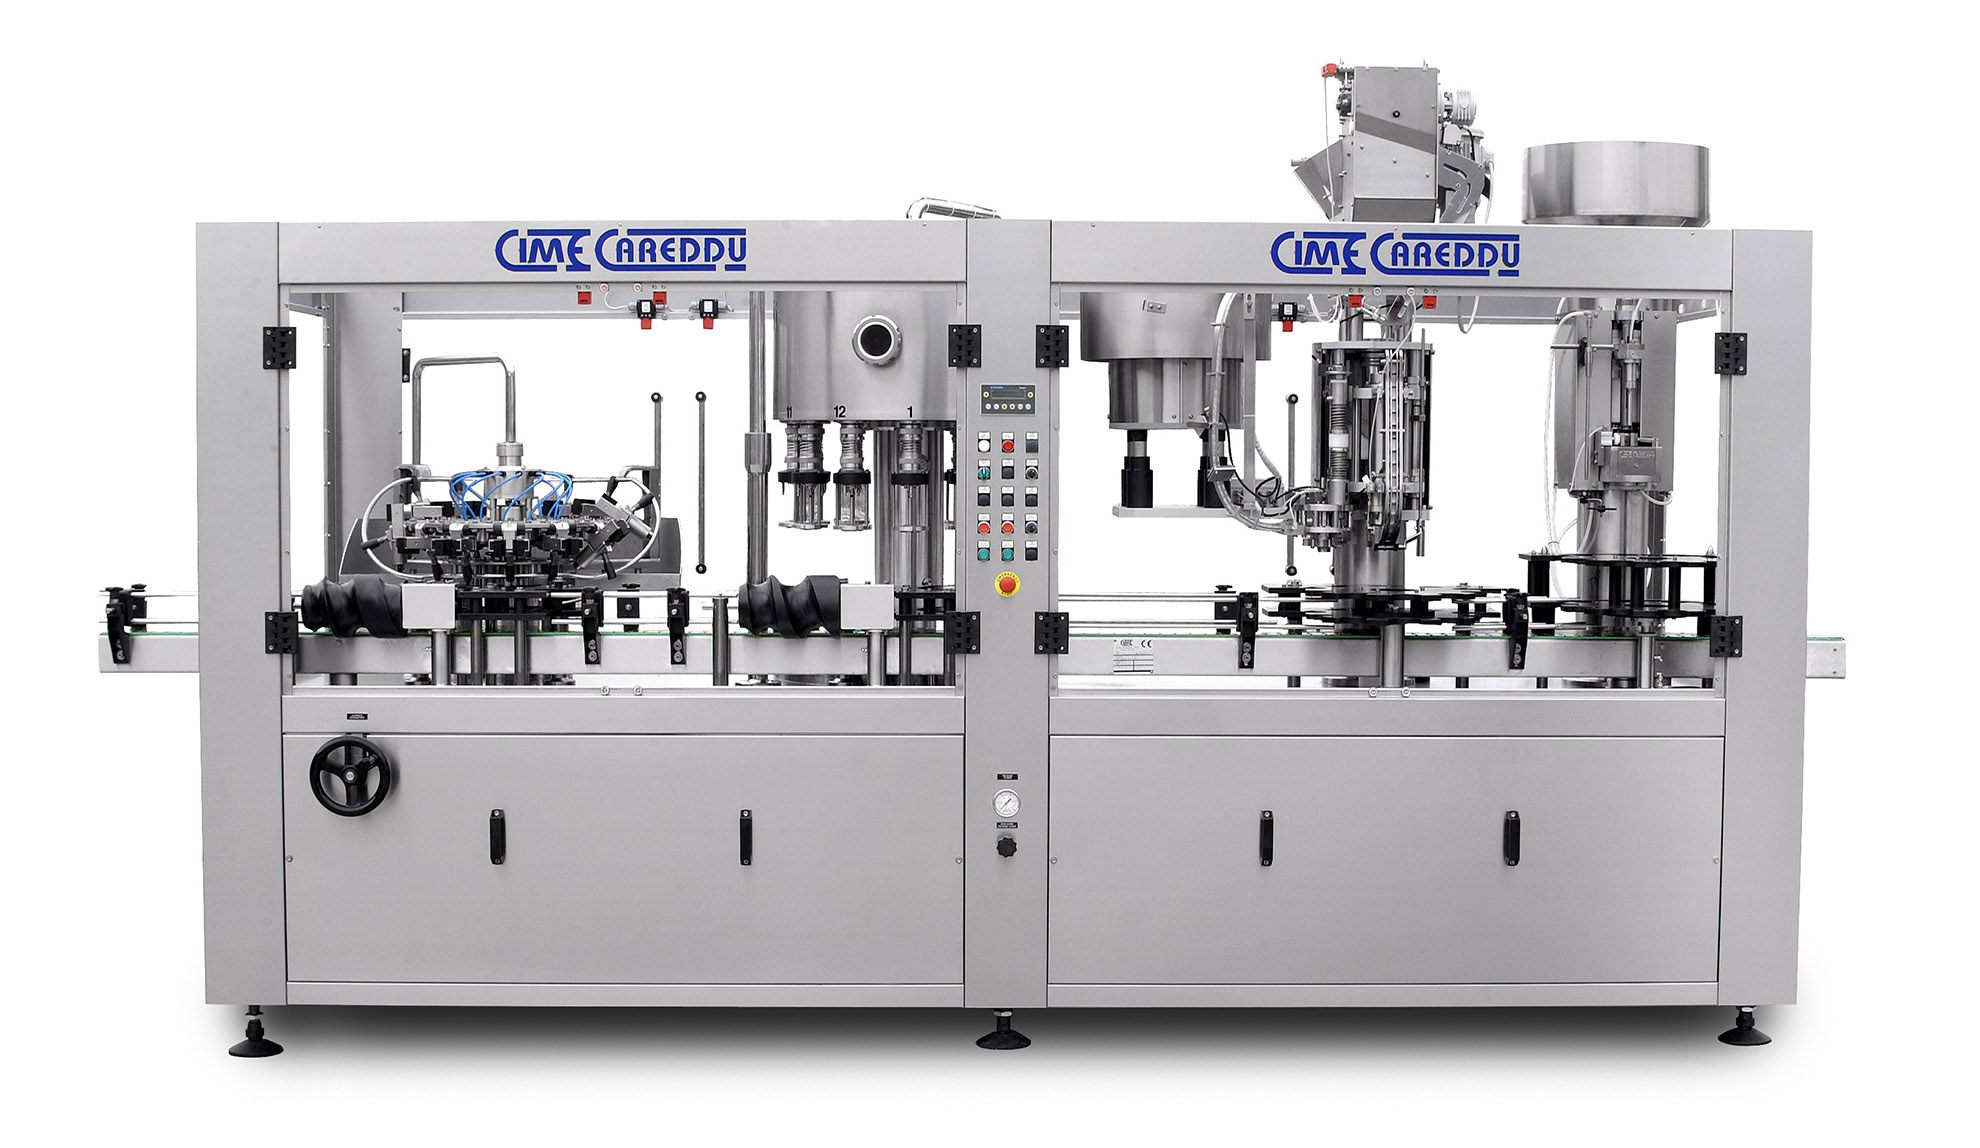 Cime Careddu Silver Machine | SMB Machinery